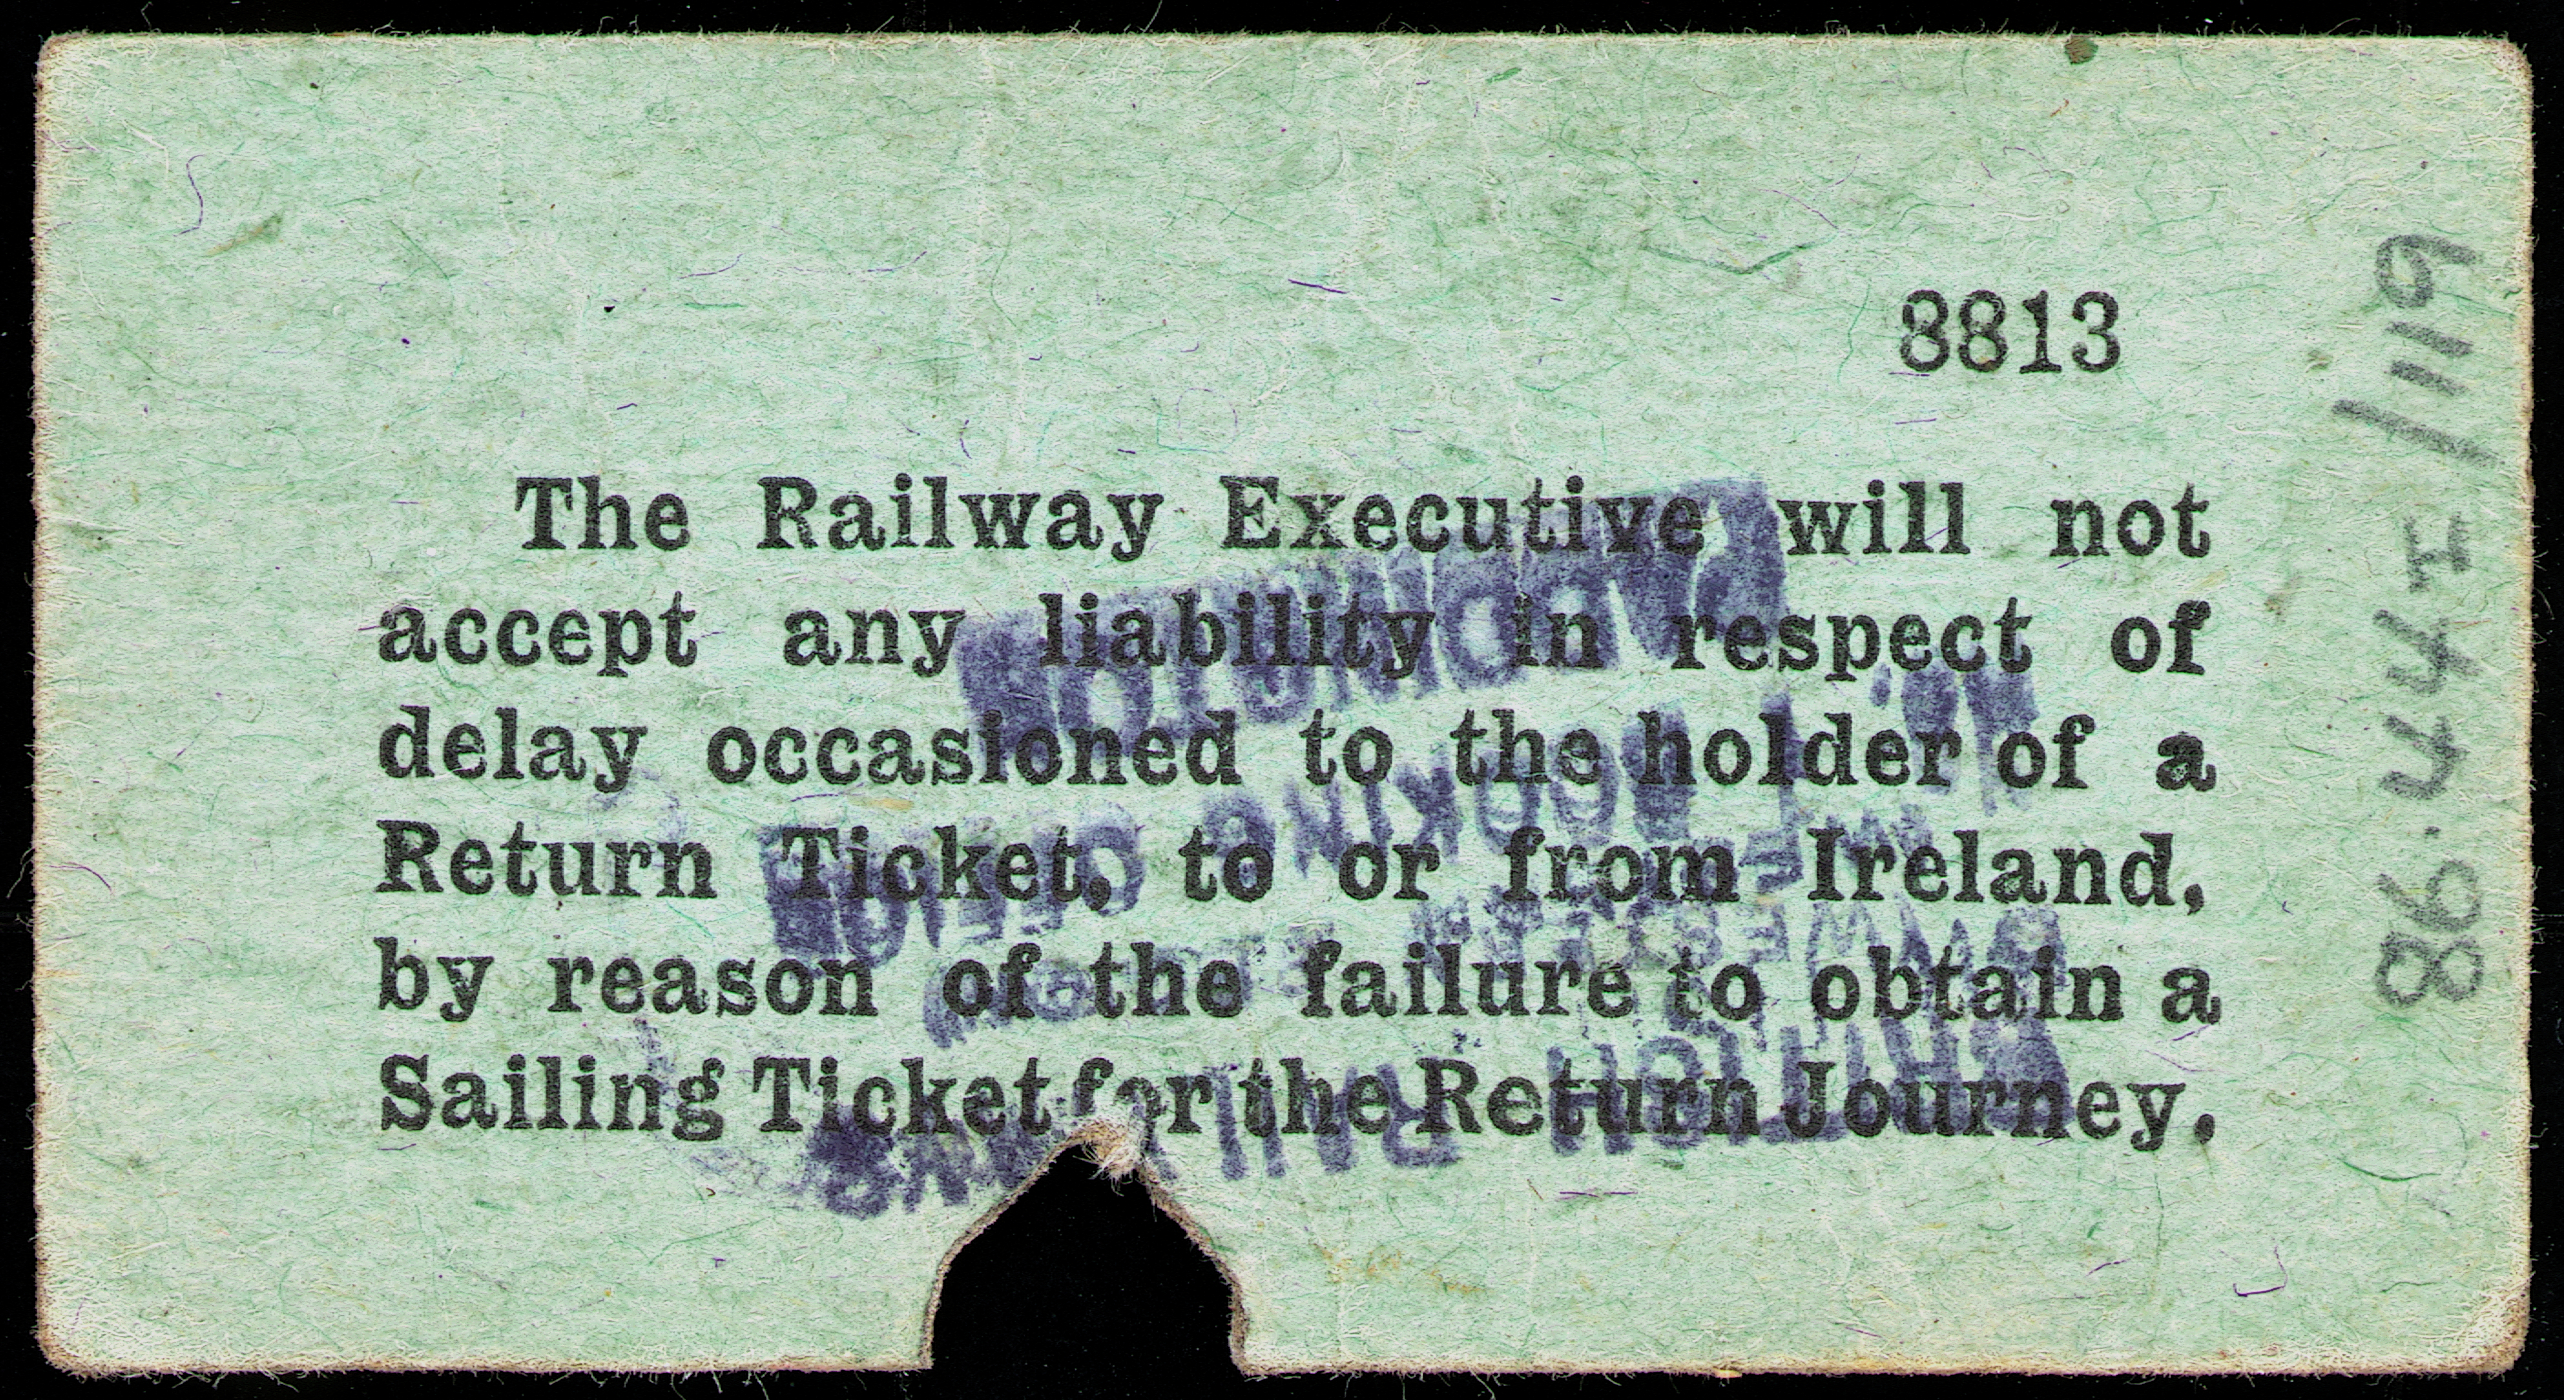 British Railways ticket